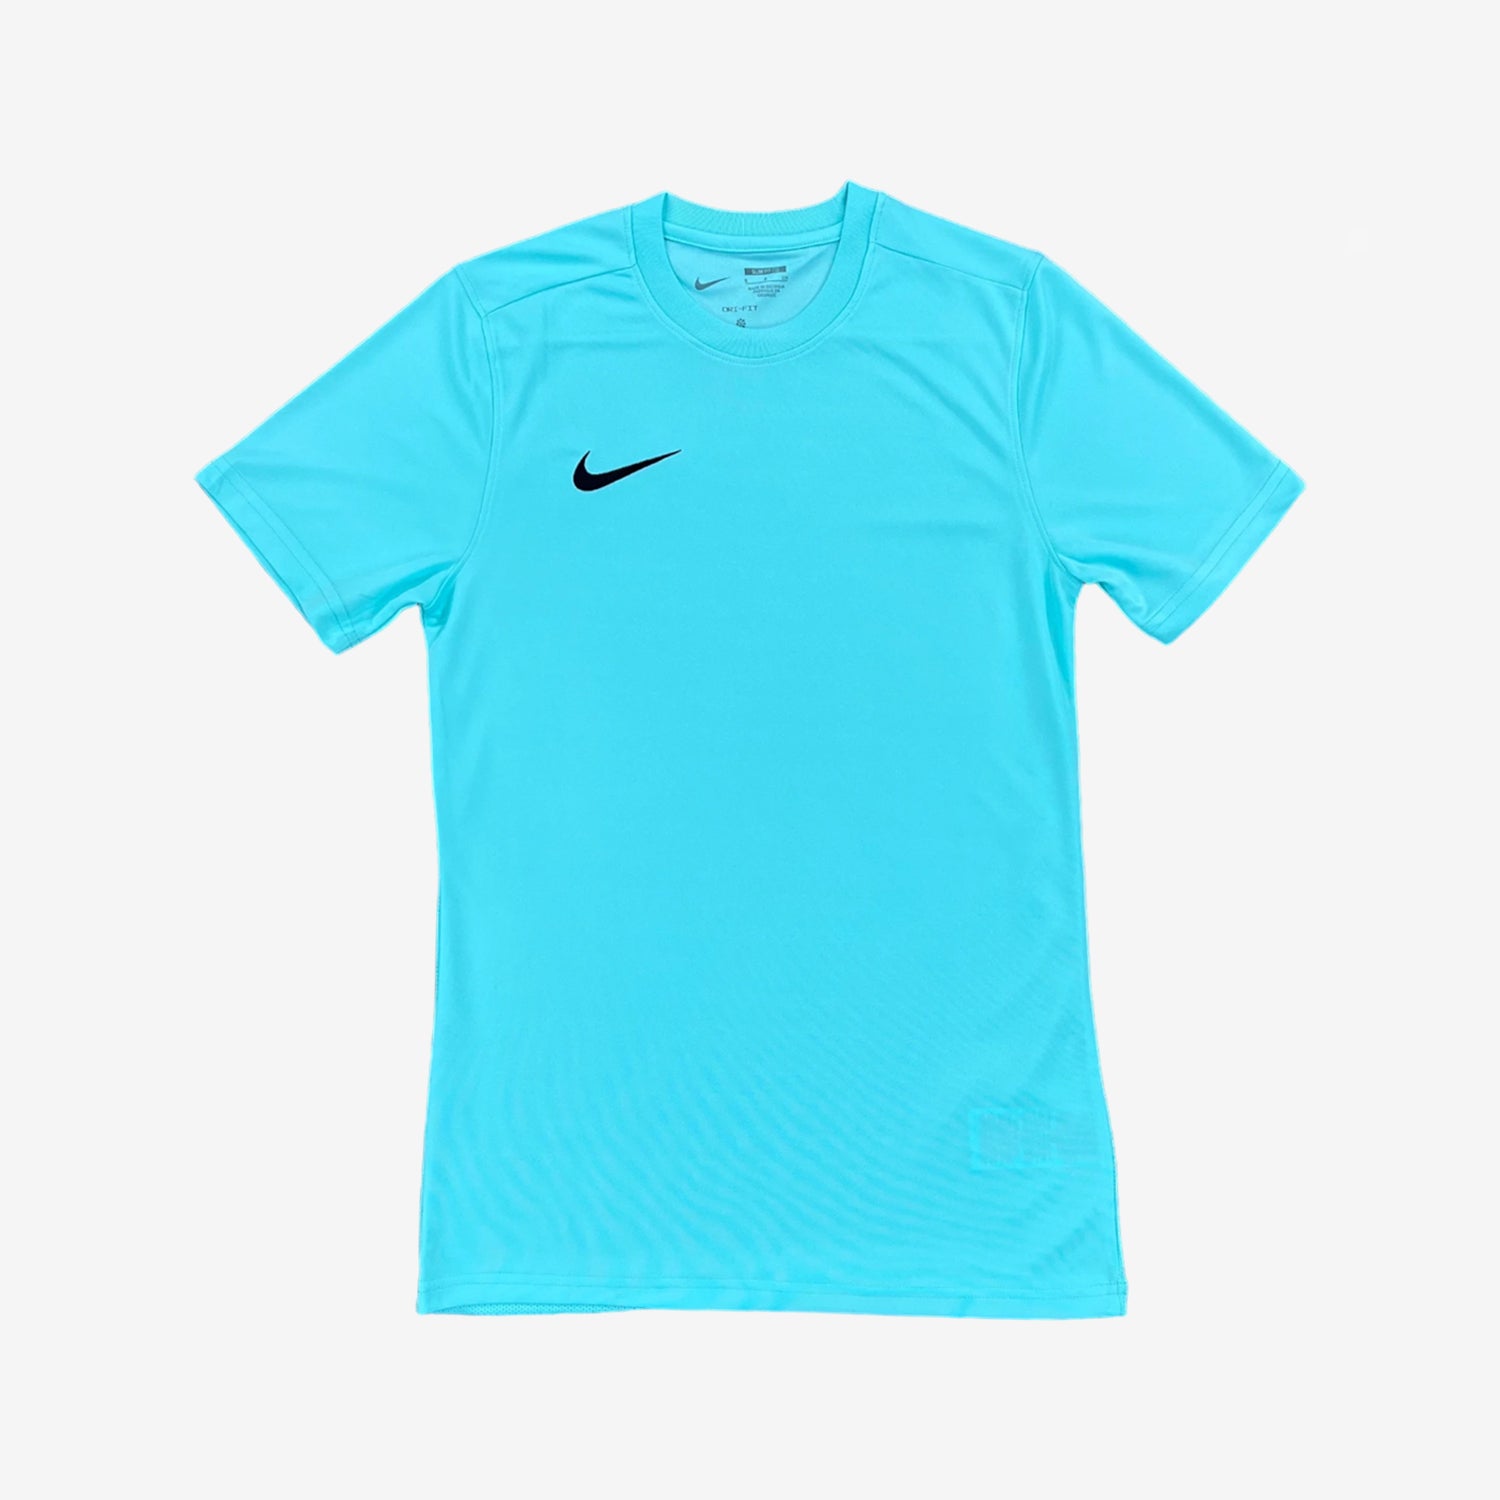 Nike Dri-Fit T-Shirt - Turquoise